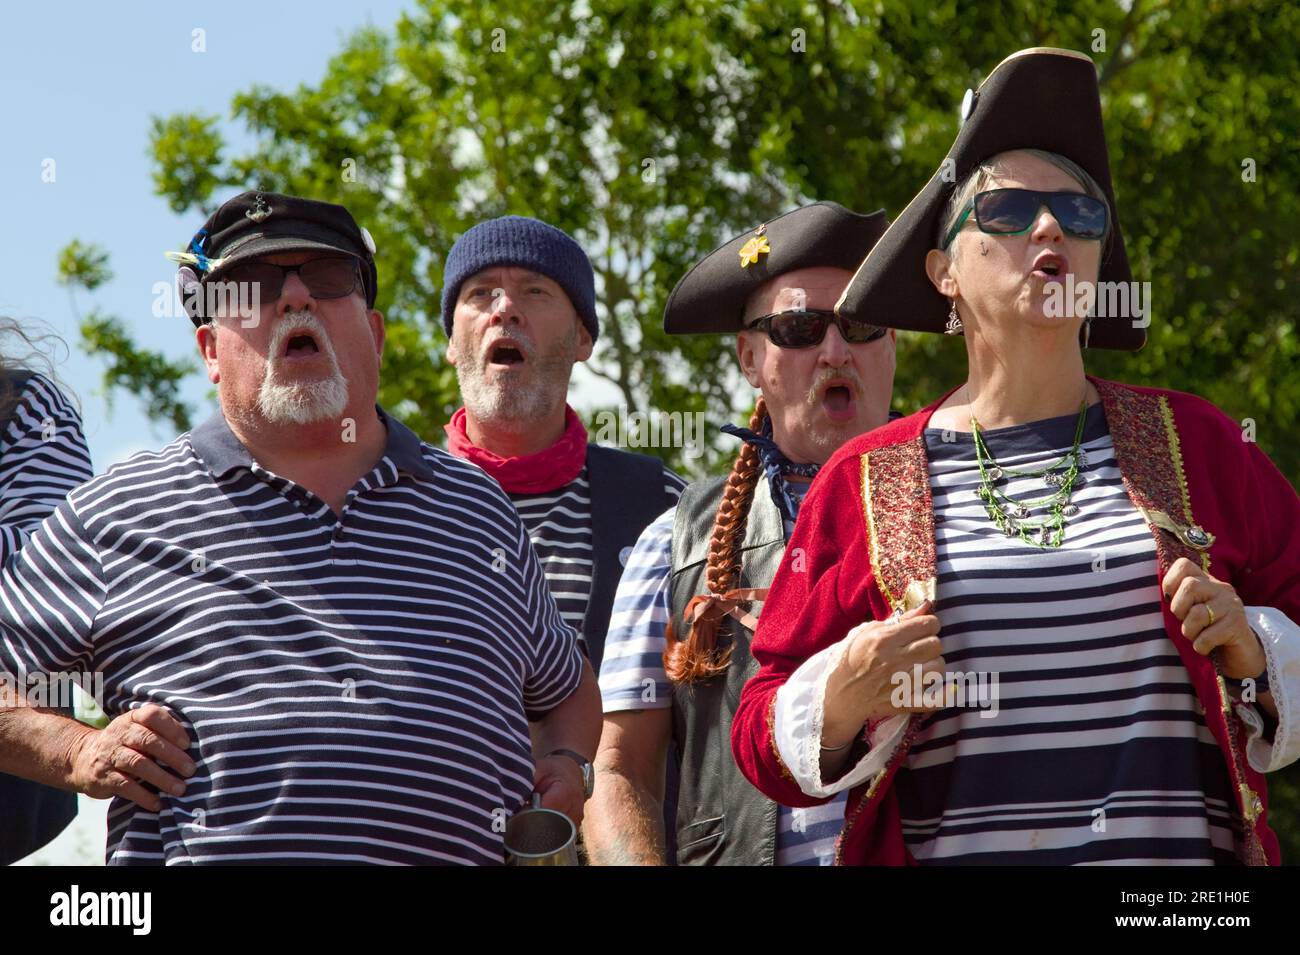 Mitglieder der Southampton Salty Sea Dogs Shanty Crew, die Als Matrosen und Piraten verkleidet Ein Sea Shanty singt, England, Großbritannien Stockfoto